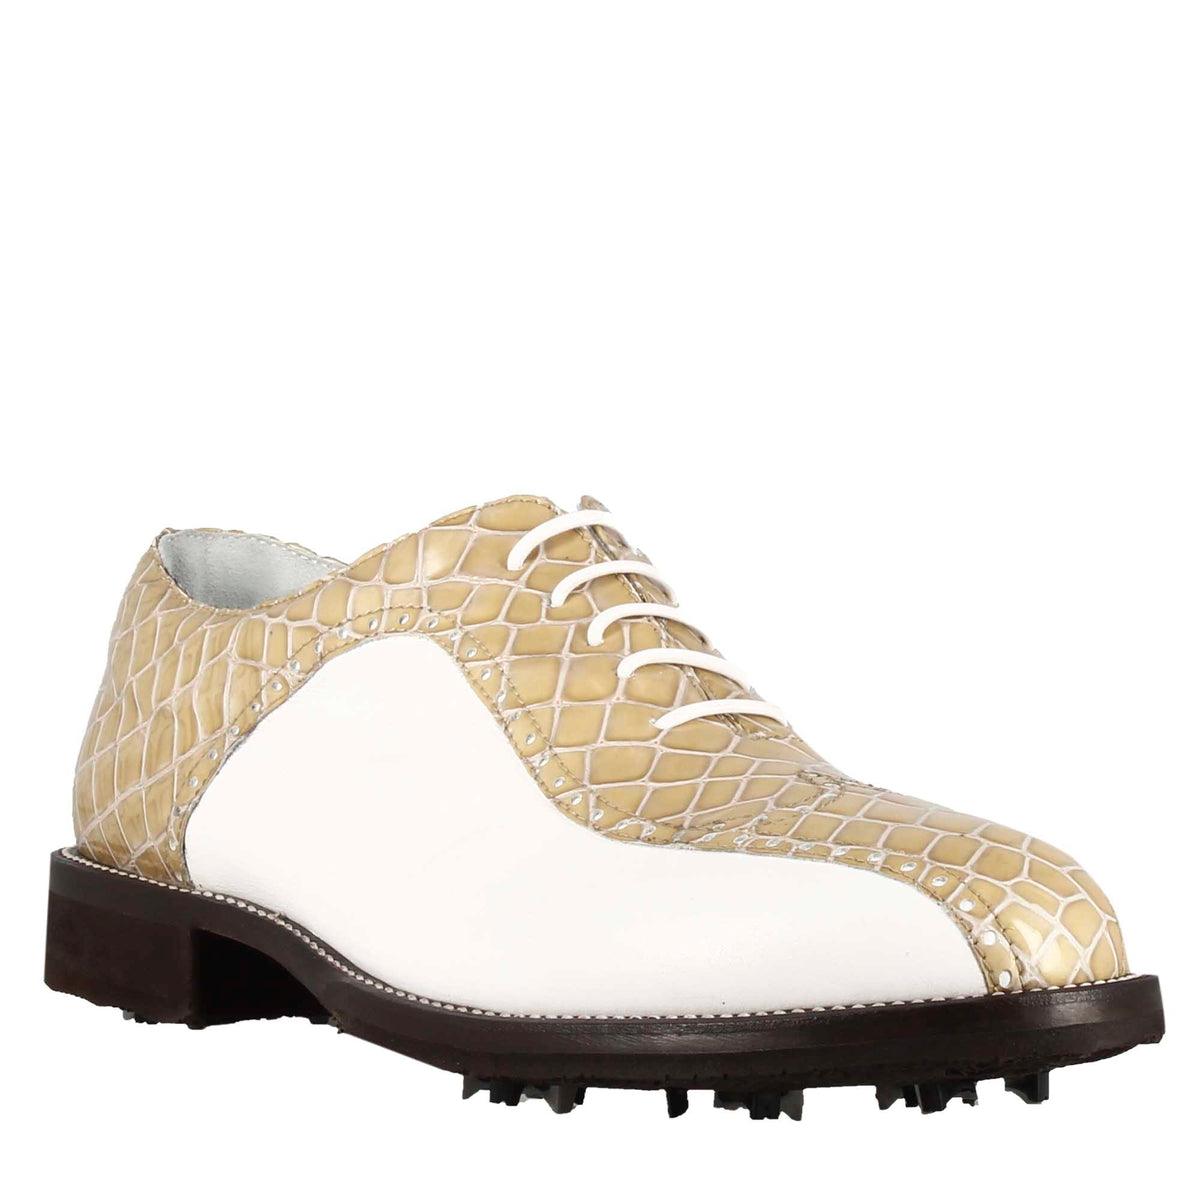 Chaussures de golf pour femme en cuir bicolore blanc et beige imprimé crocodile